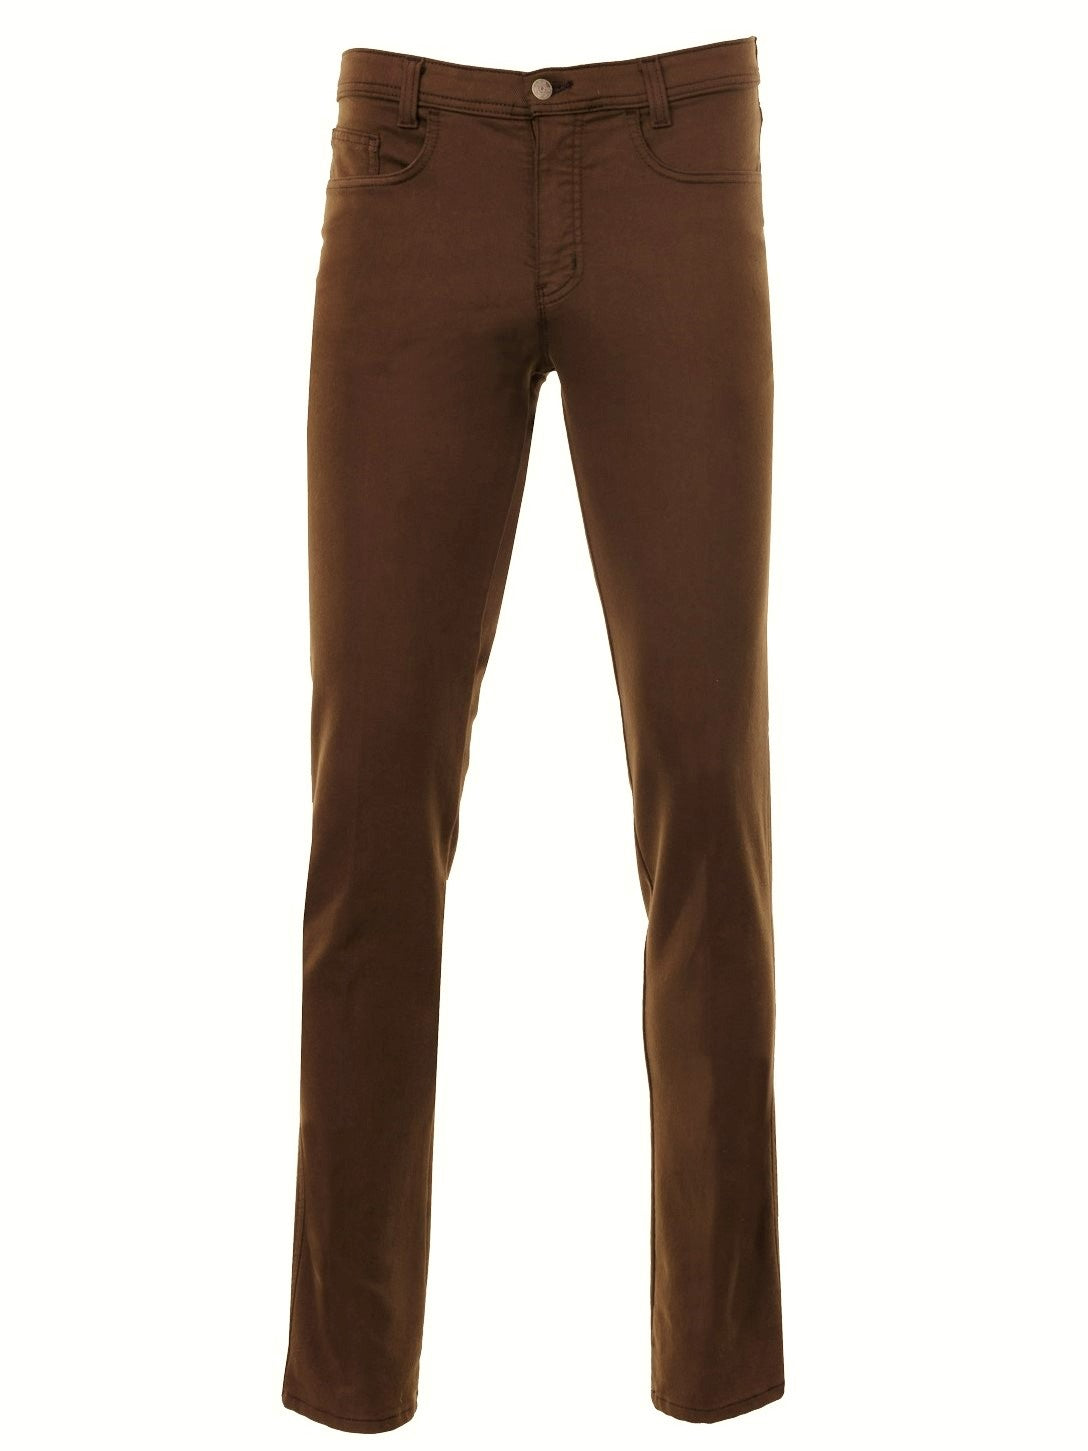 Pantalon cuivre à motif chevrons coupe semi-ajustée